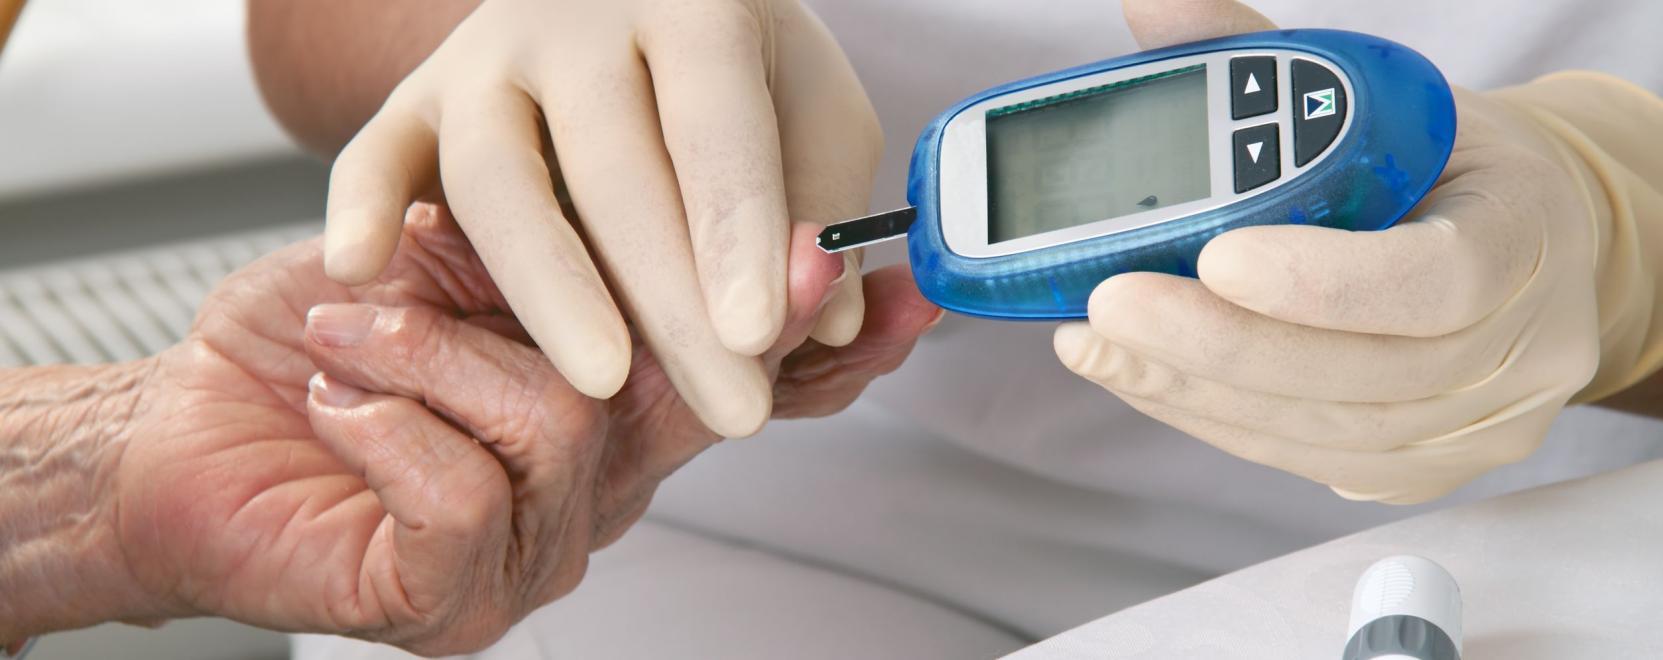 Sokat segít a telemedicinás vércukormérő – a járványban is